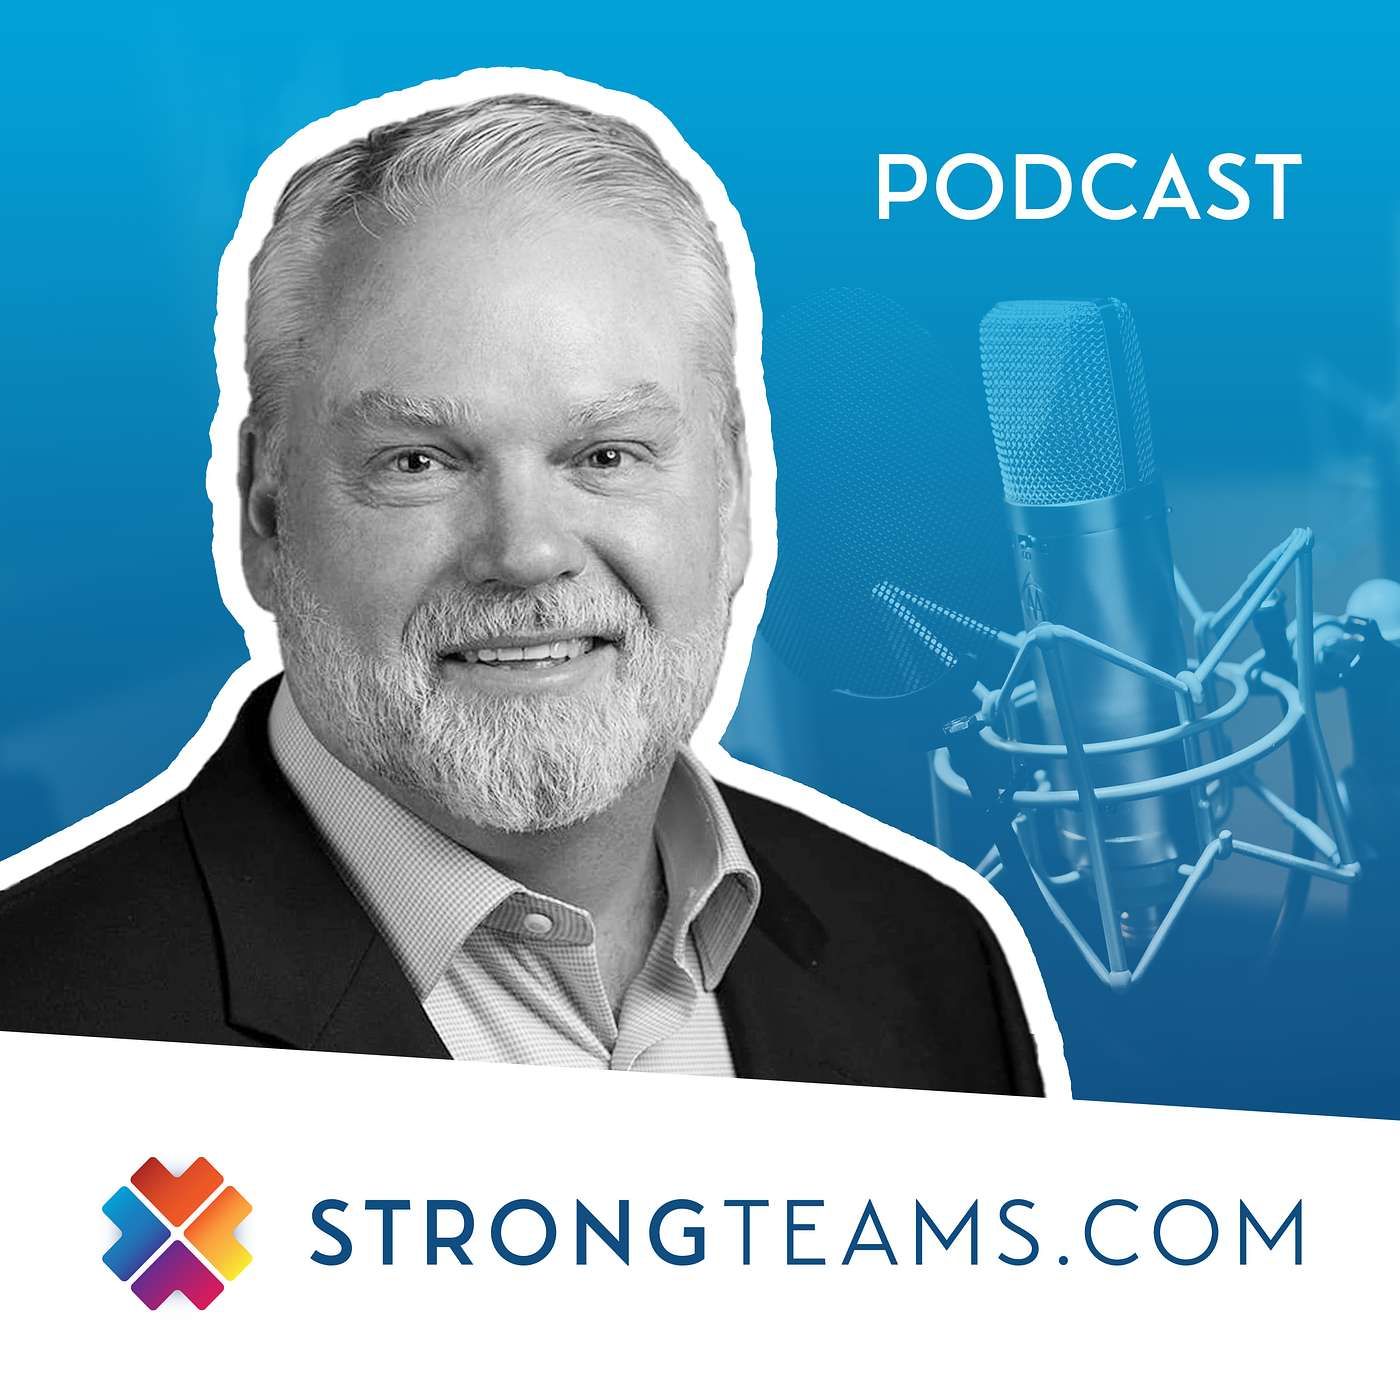 StrongTeams.com Podcast | Rodney Cox